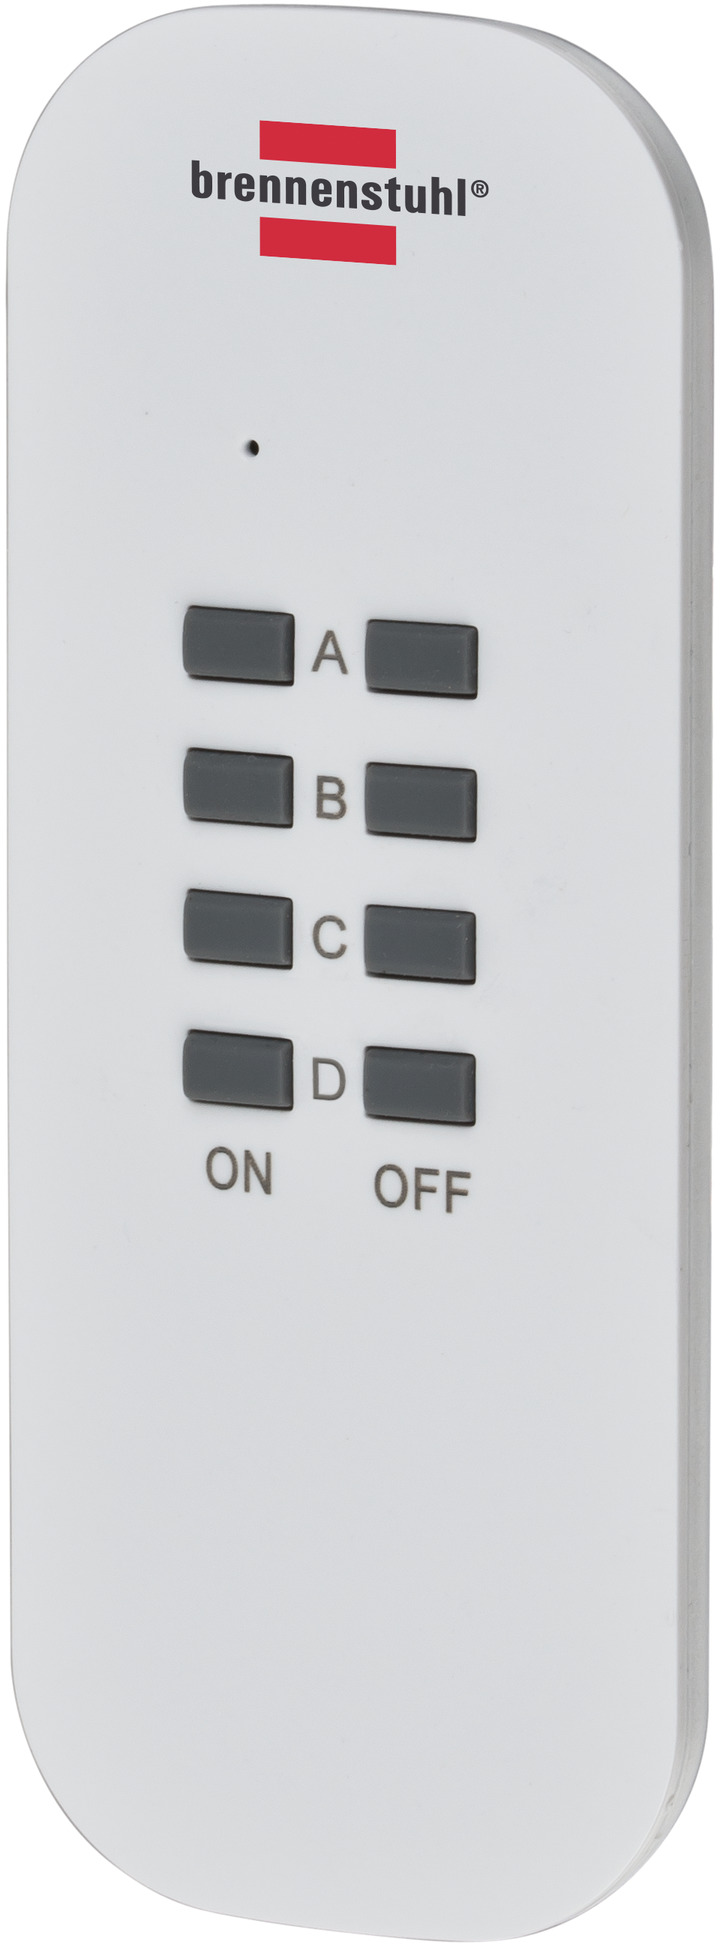 Brennenstuhl Comfort-Line RC CE1 3001 prise sans fil 1000W + télécommande  blanc